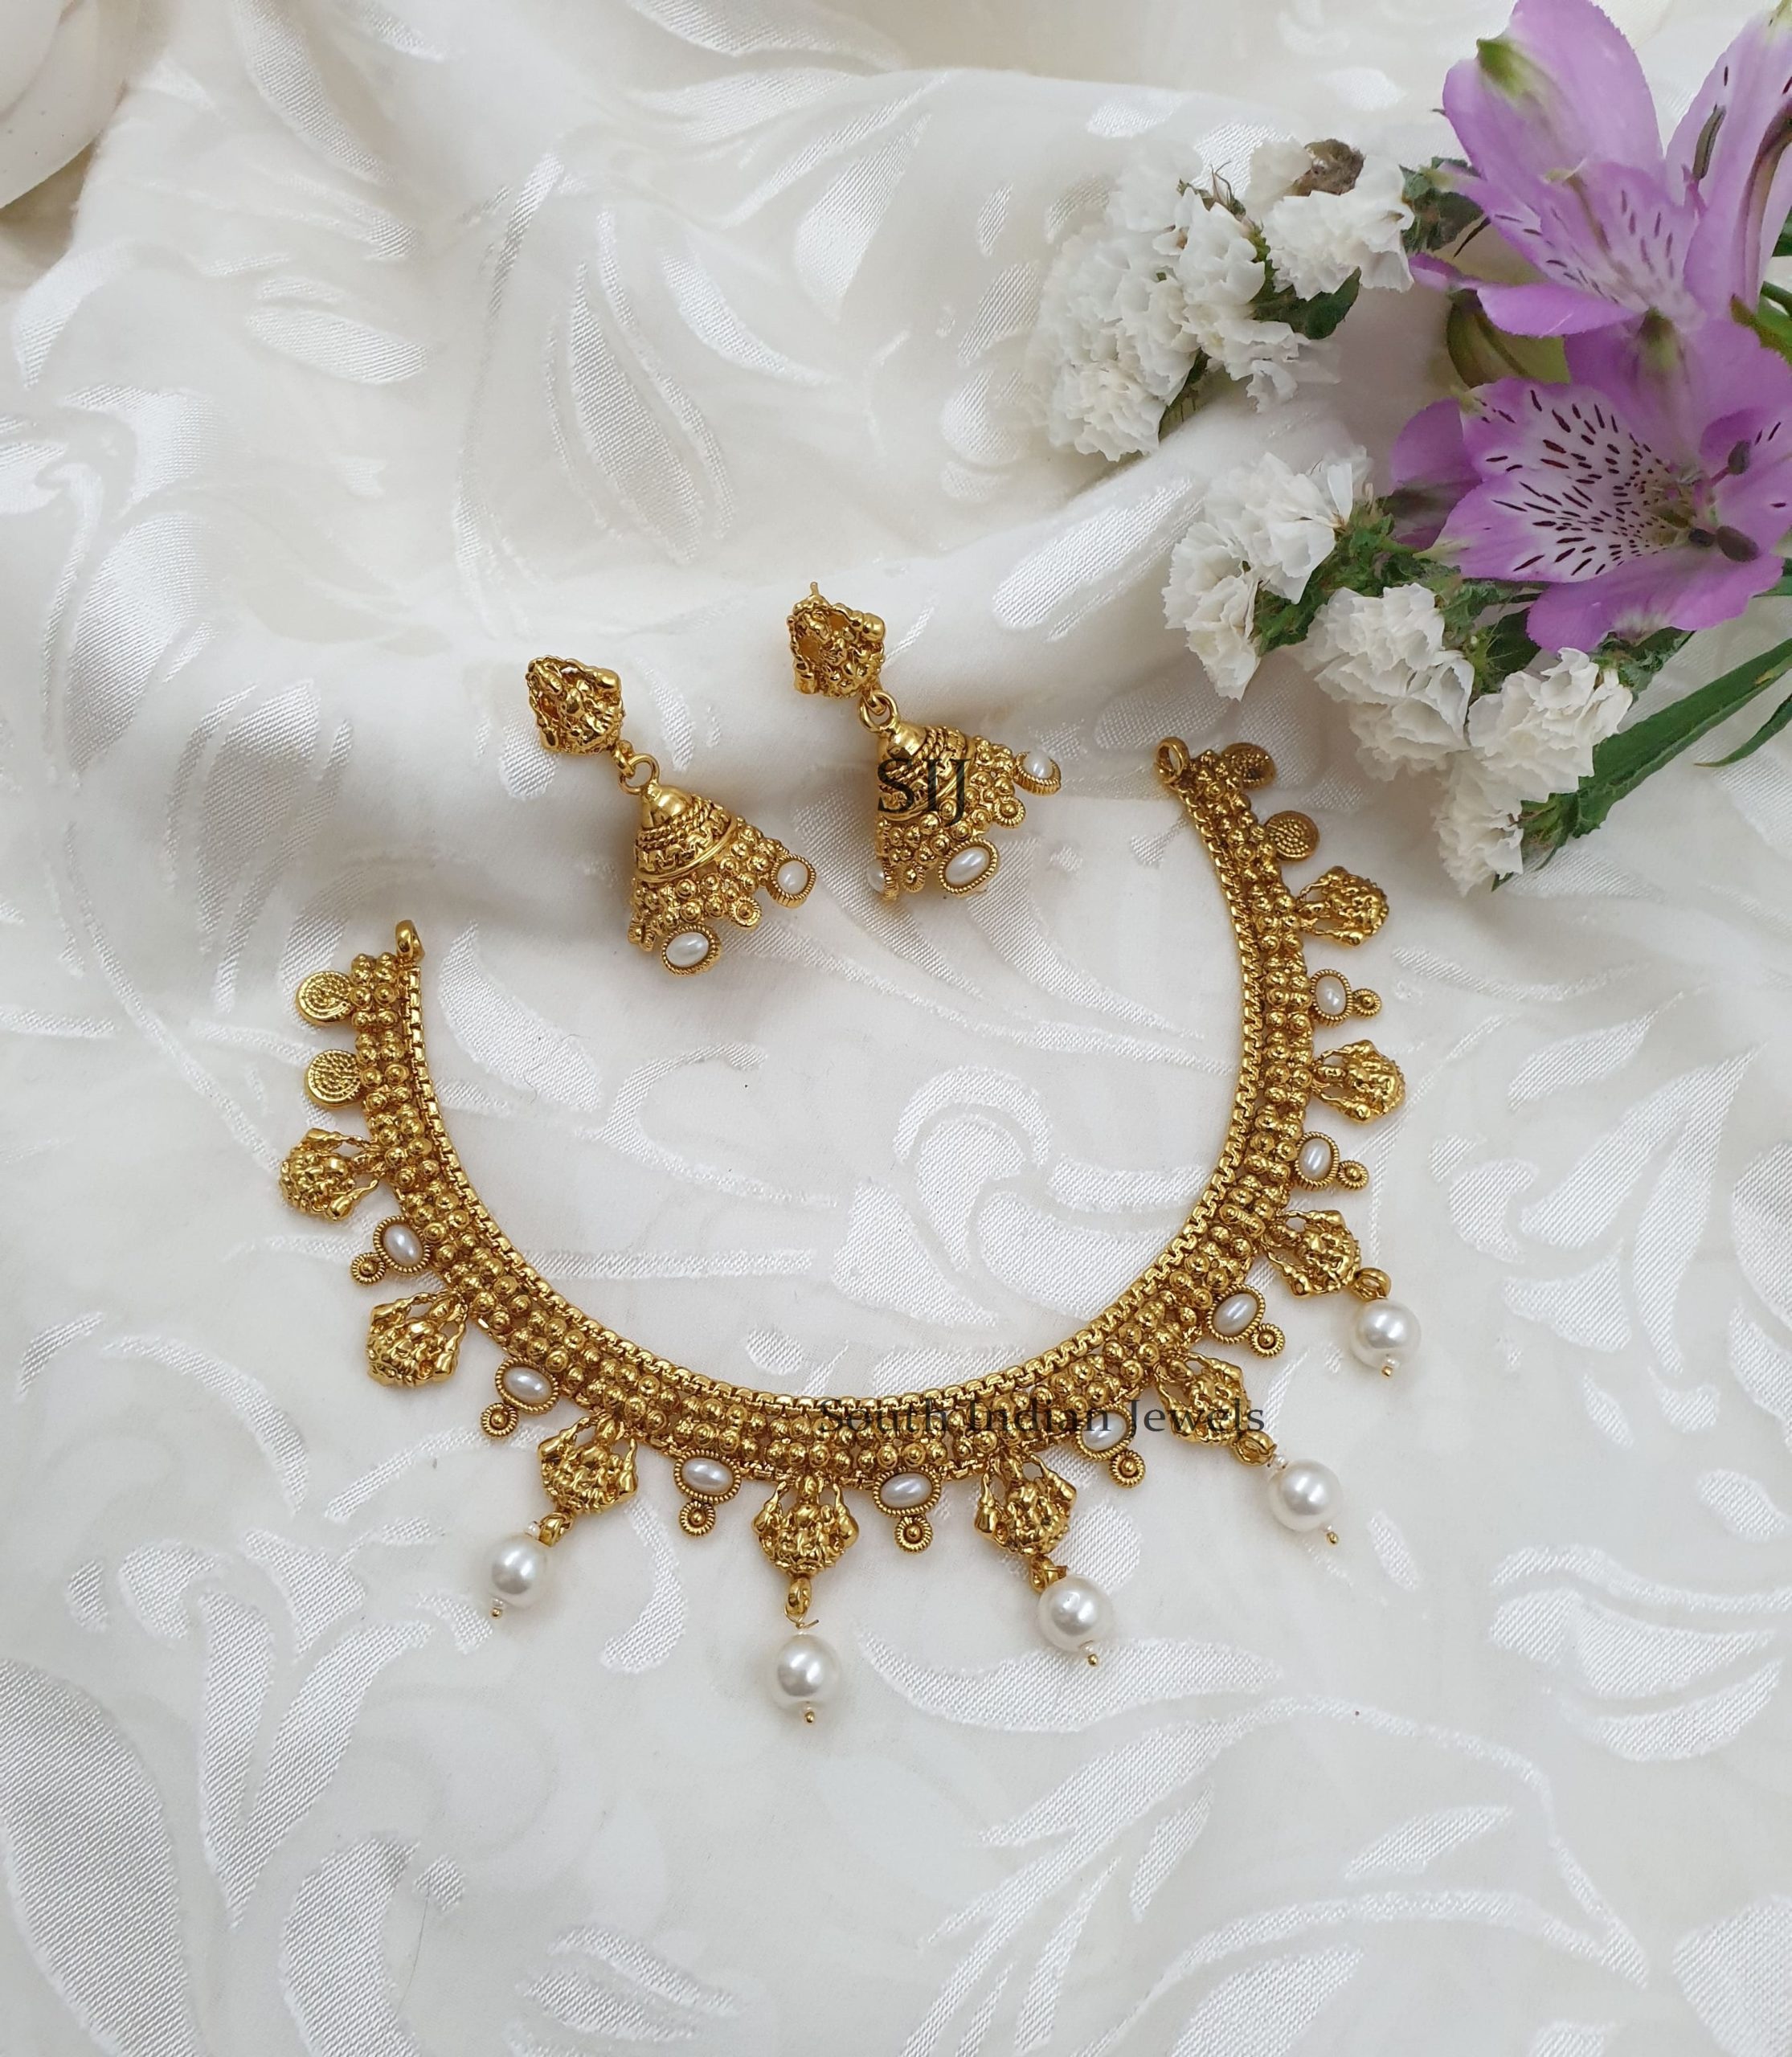 Gorgeous Lakshmi Design Necklace With Jhumkas (4)